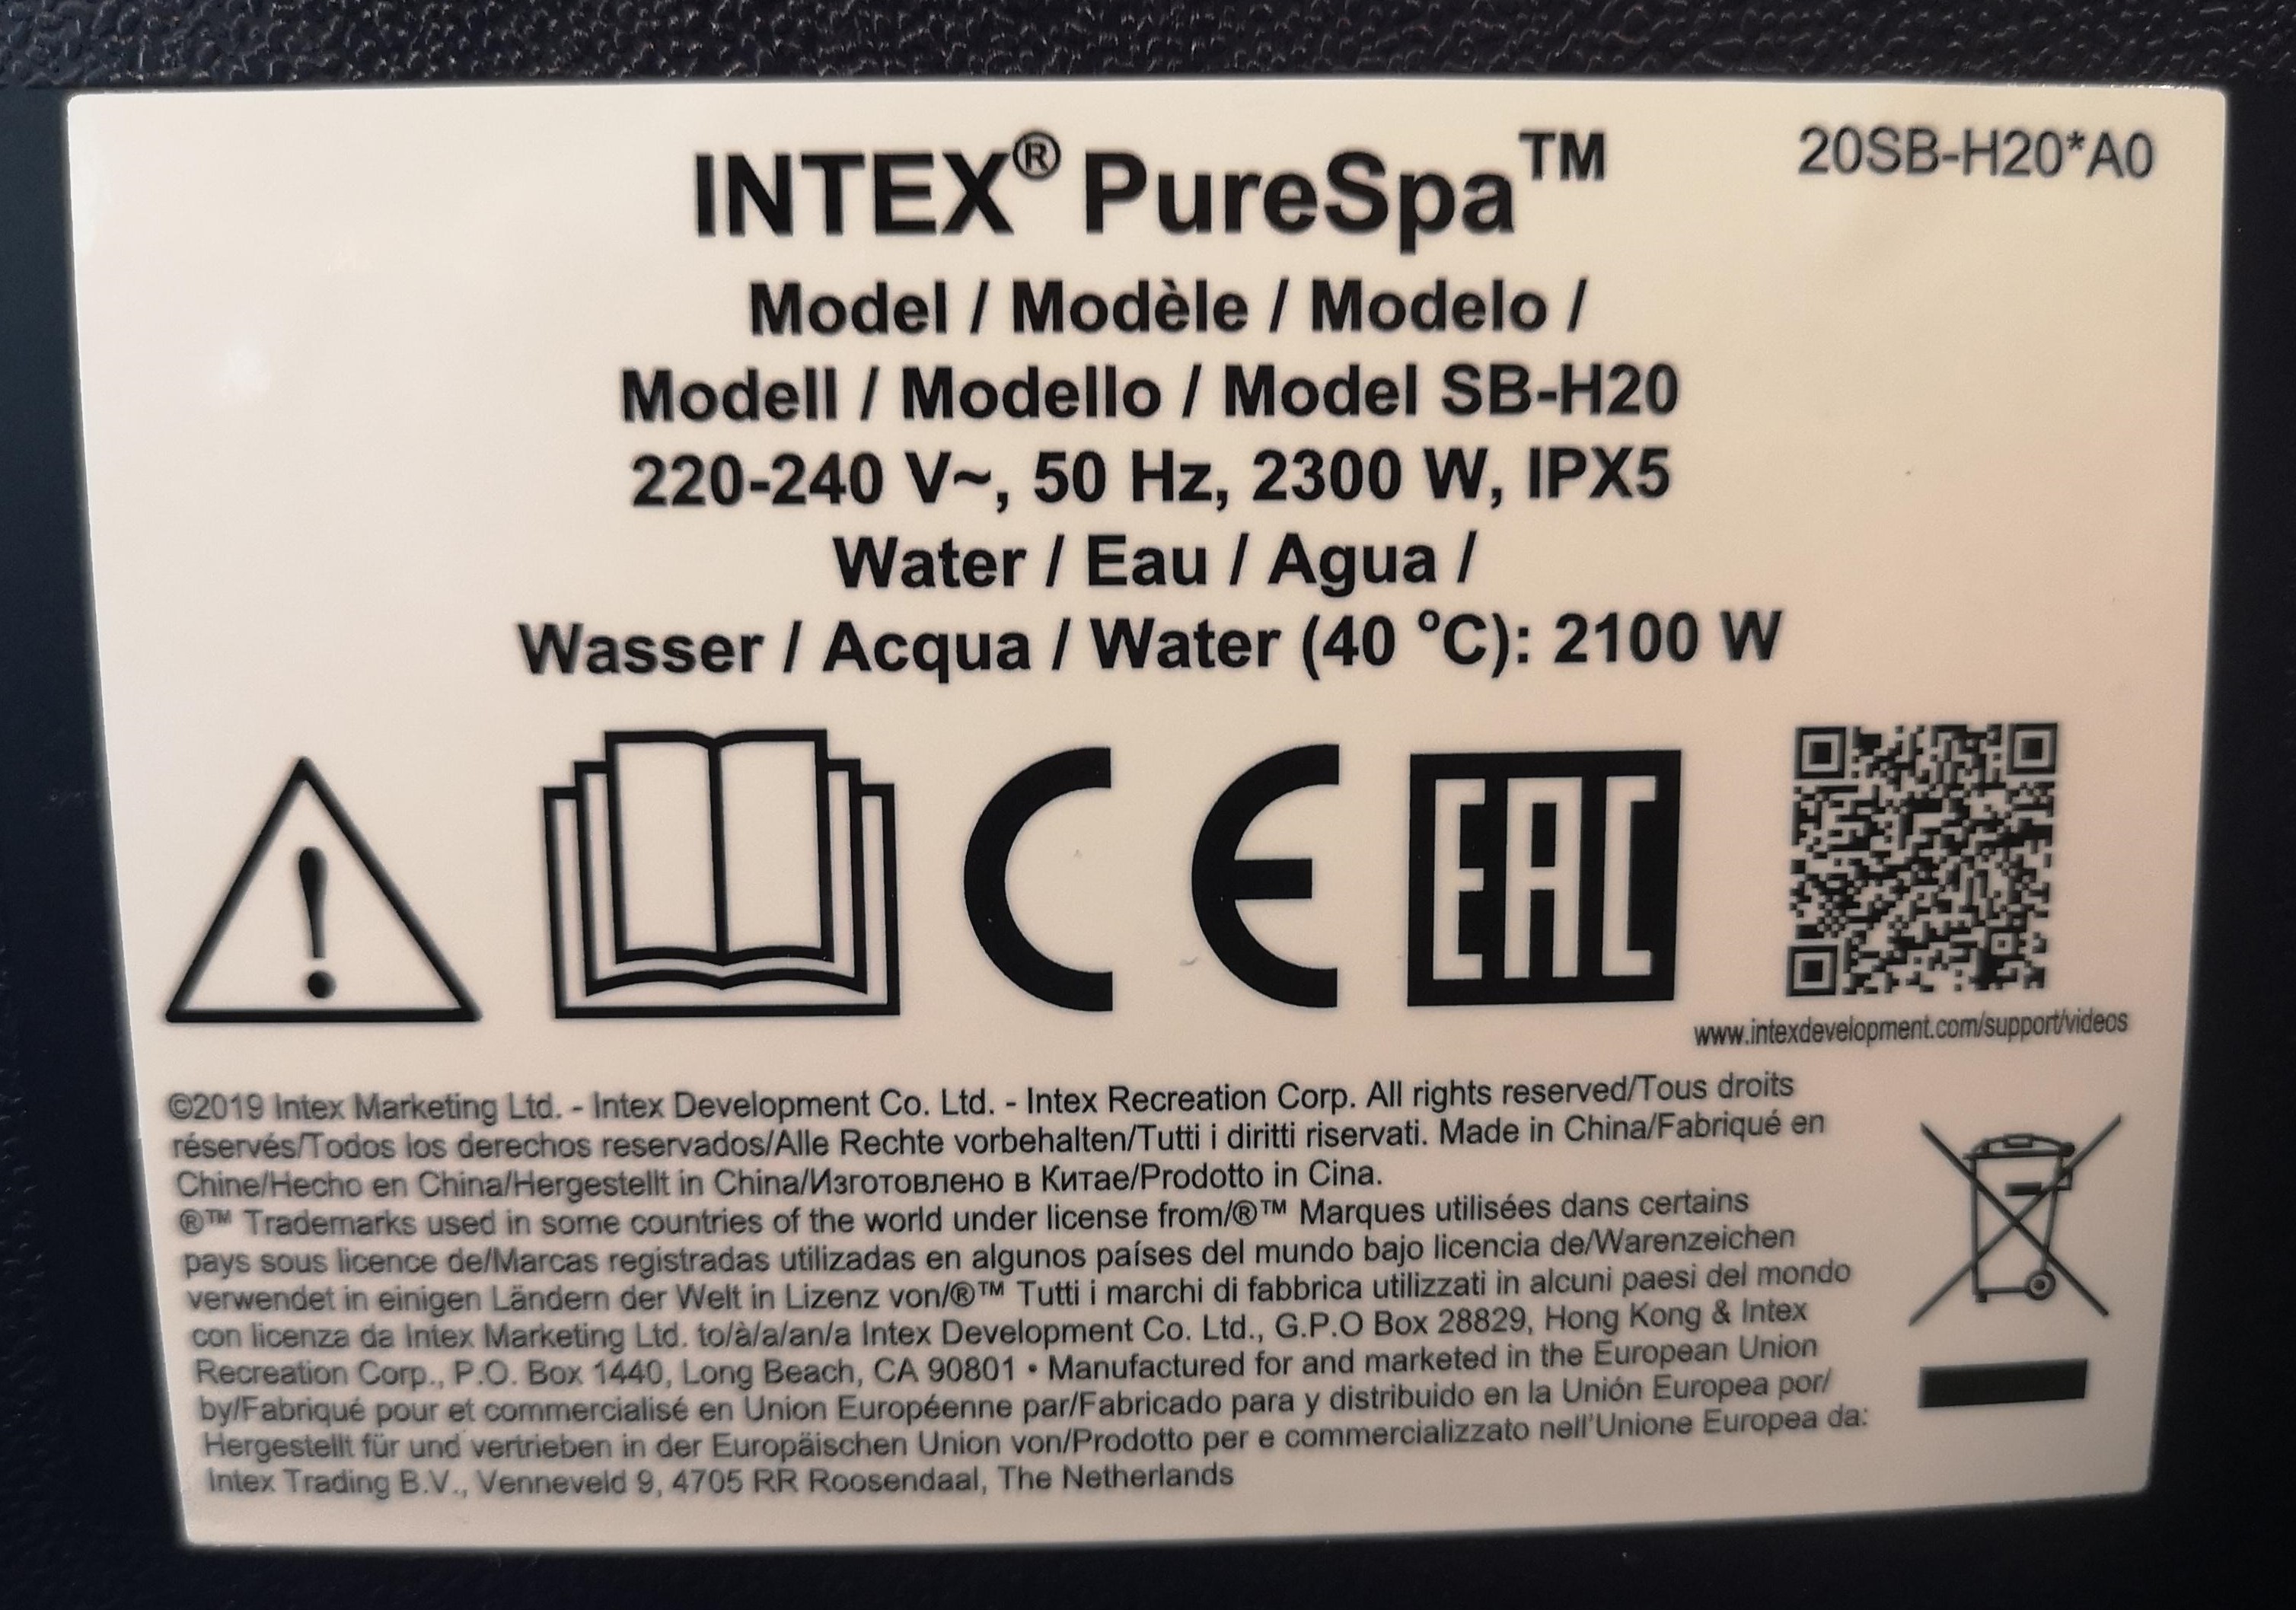 Comment réparer une fuite sur mon matelas gonflable – Centre d'aide INTEX -  Fabricant de piscines hors sol et d'articles gonflables